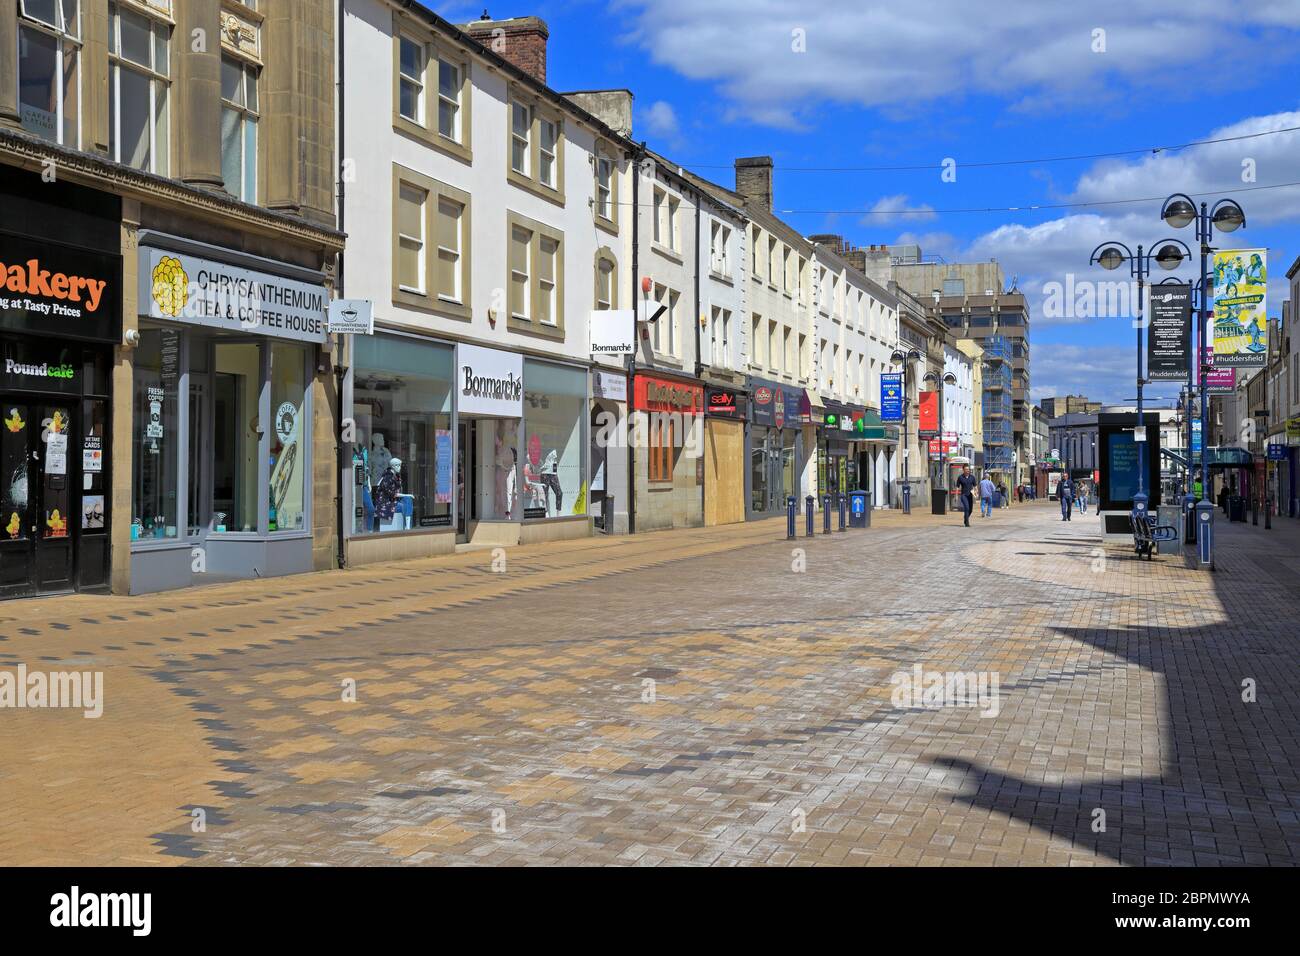 Presque déserté de New Street pendant la pandémie du coronavirus, Huddersfield, West Yorkshire, Angleterre, Royaume-Uni. Banque D'Images